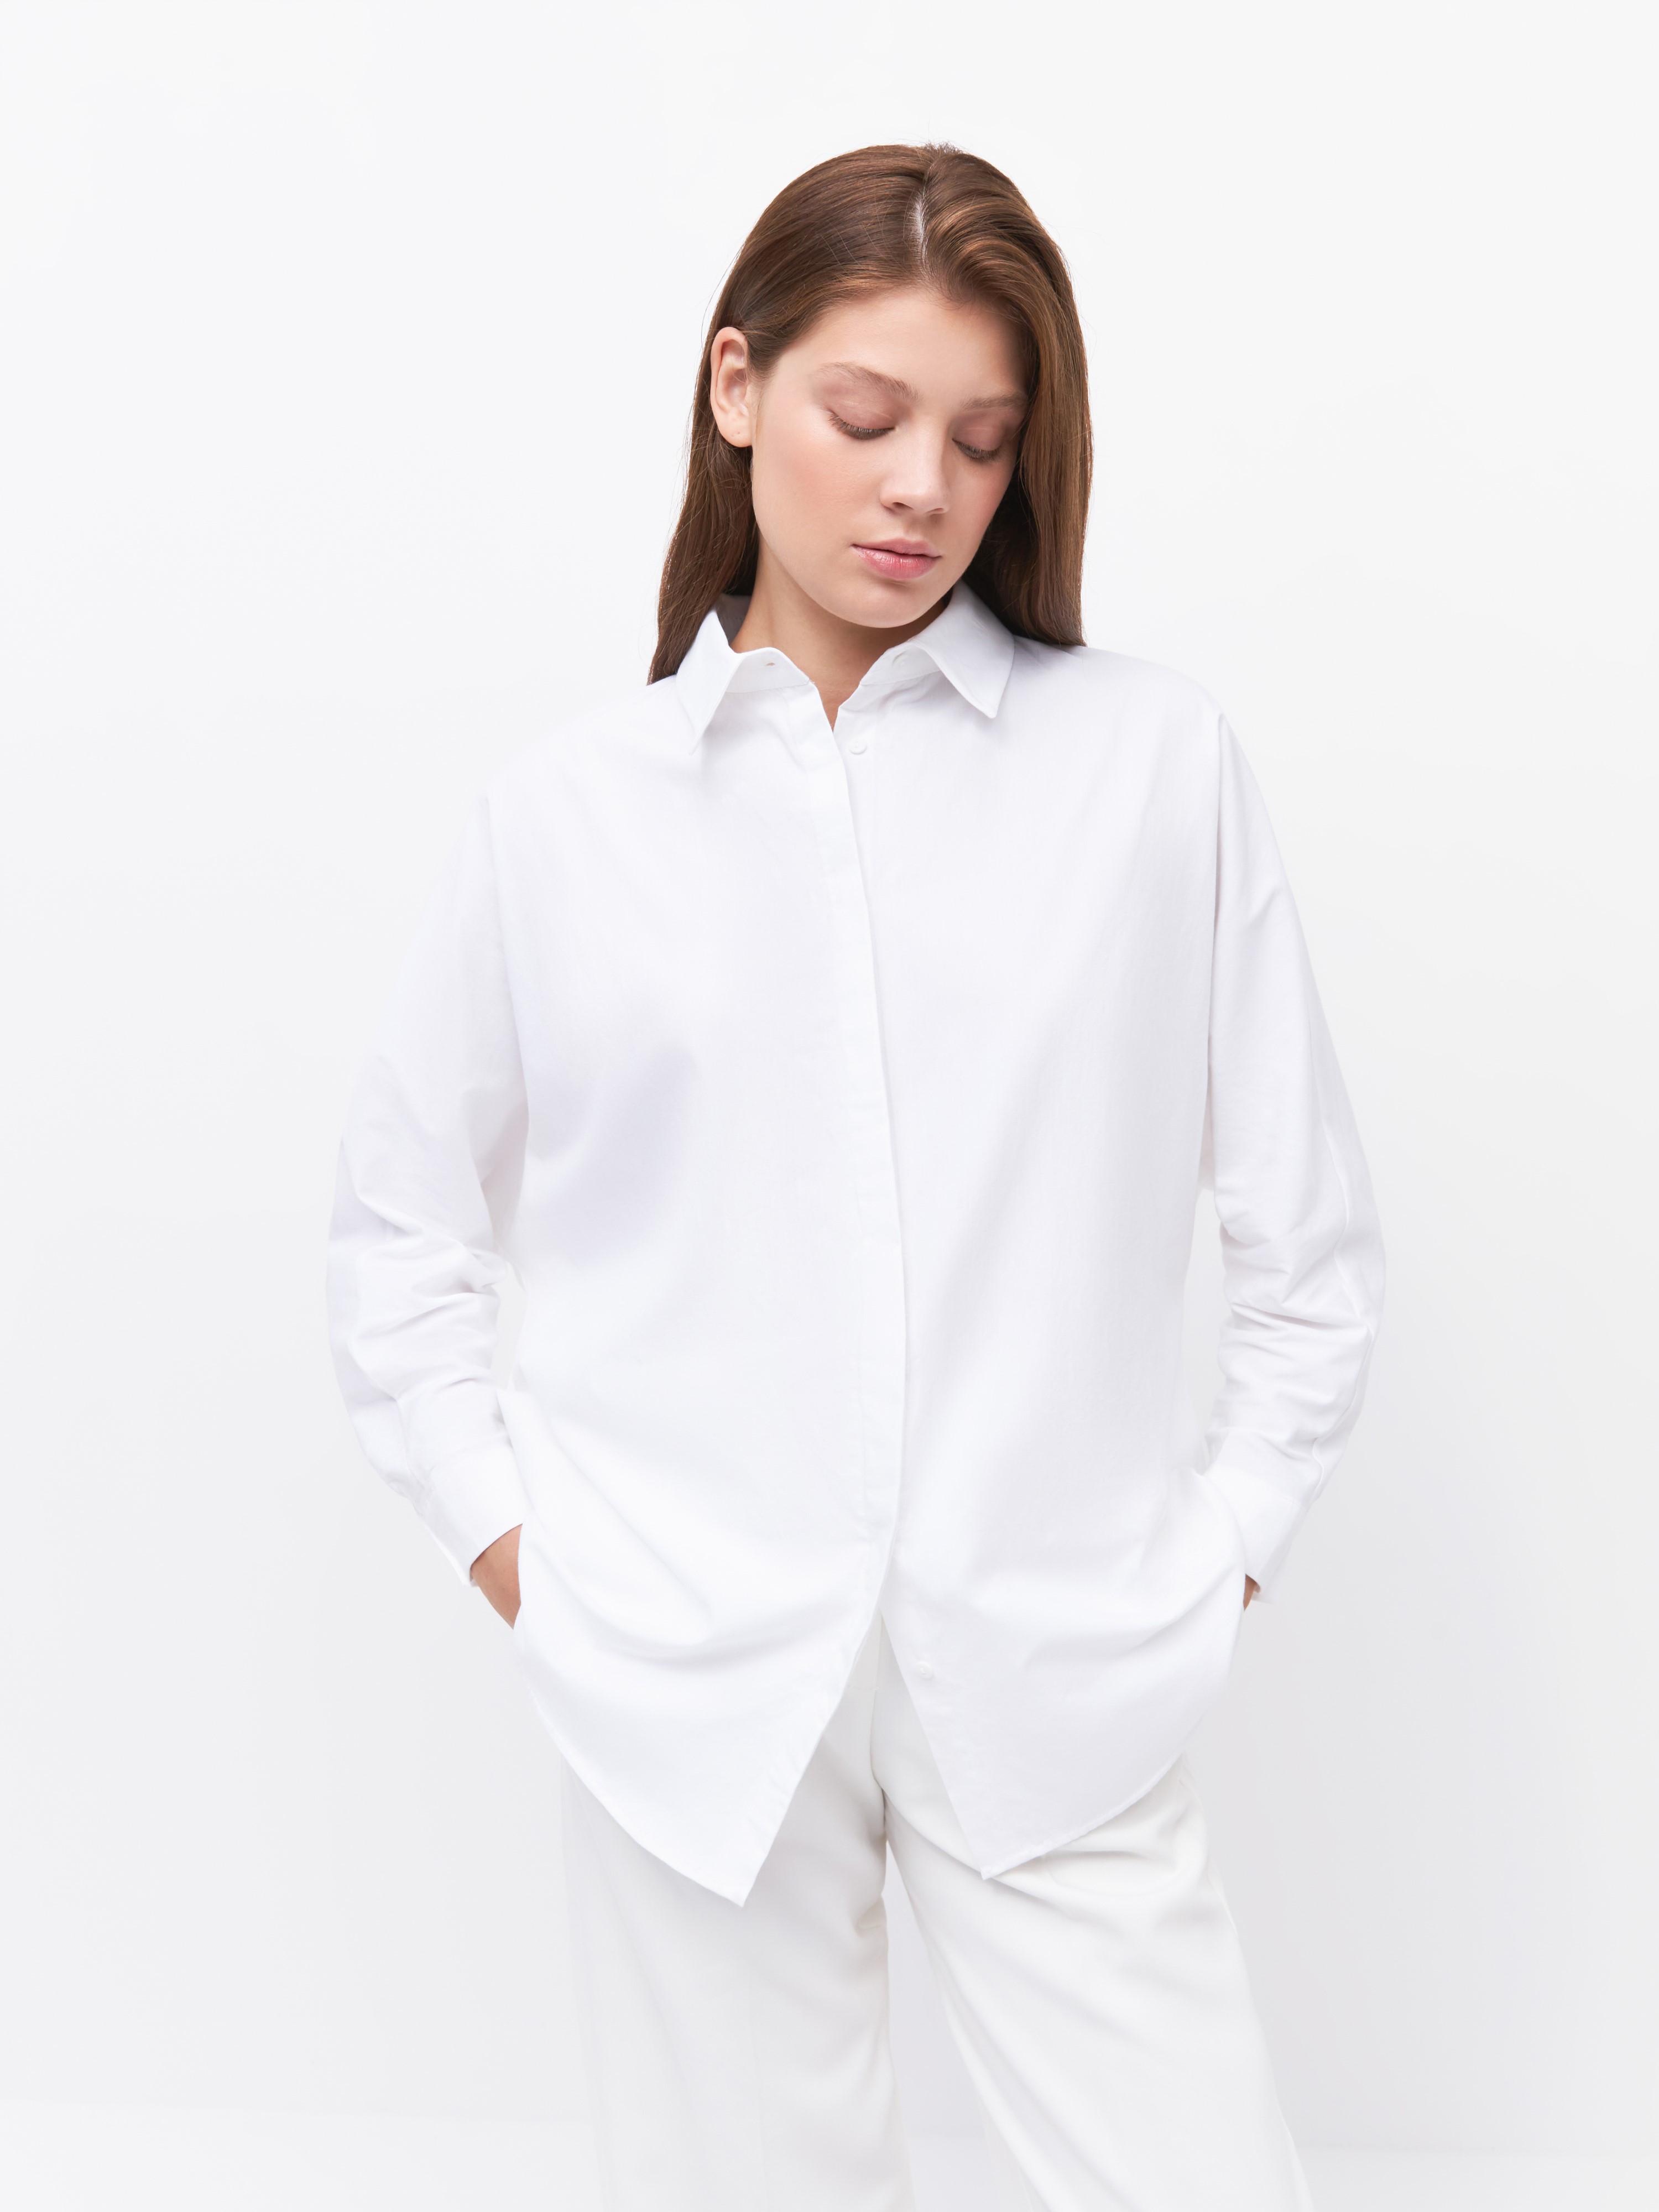 Рубашка женская Arive ARV-WS-10521-007 белая, размер M